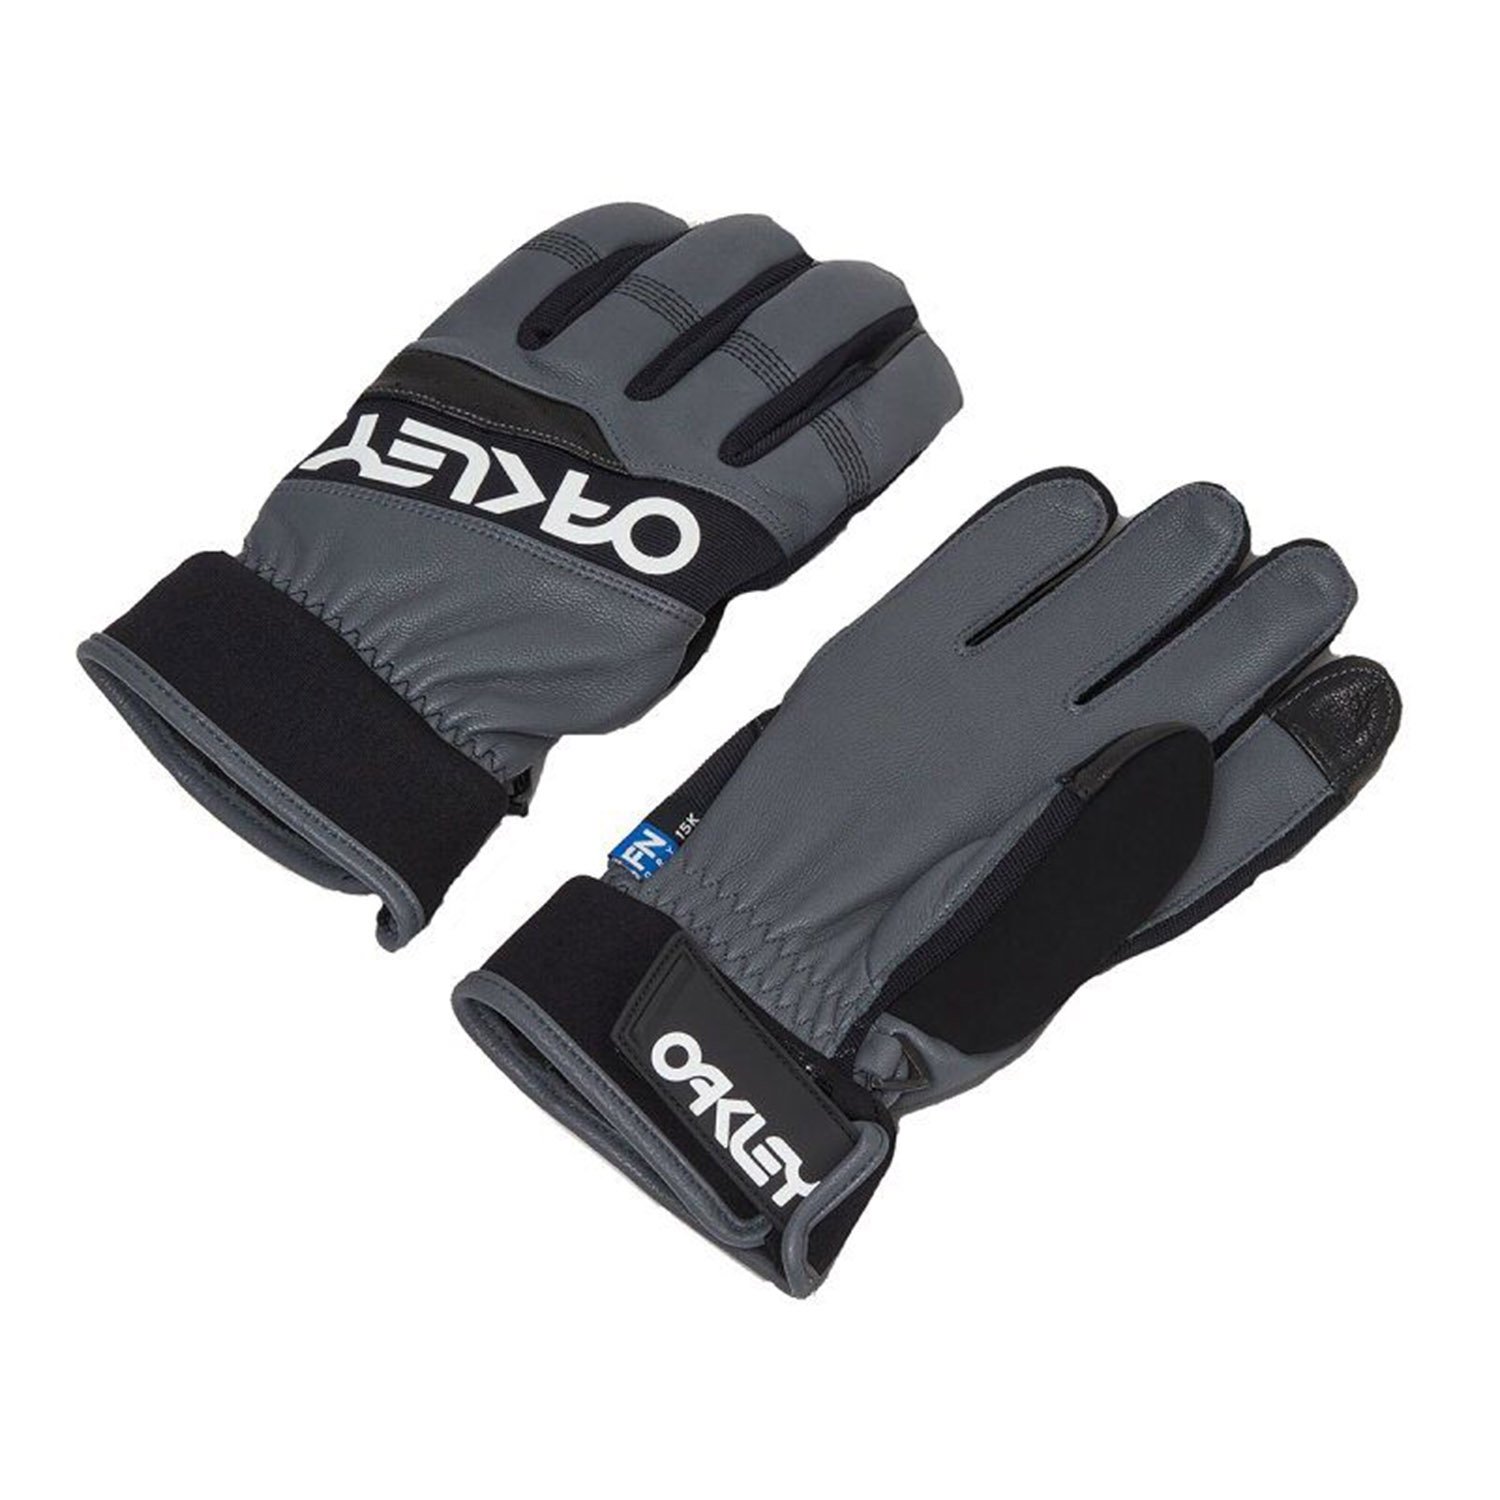 Qakley Factory Winter Gloves 2.0 Erkek Eldiven - Beyaz - 1